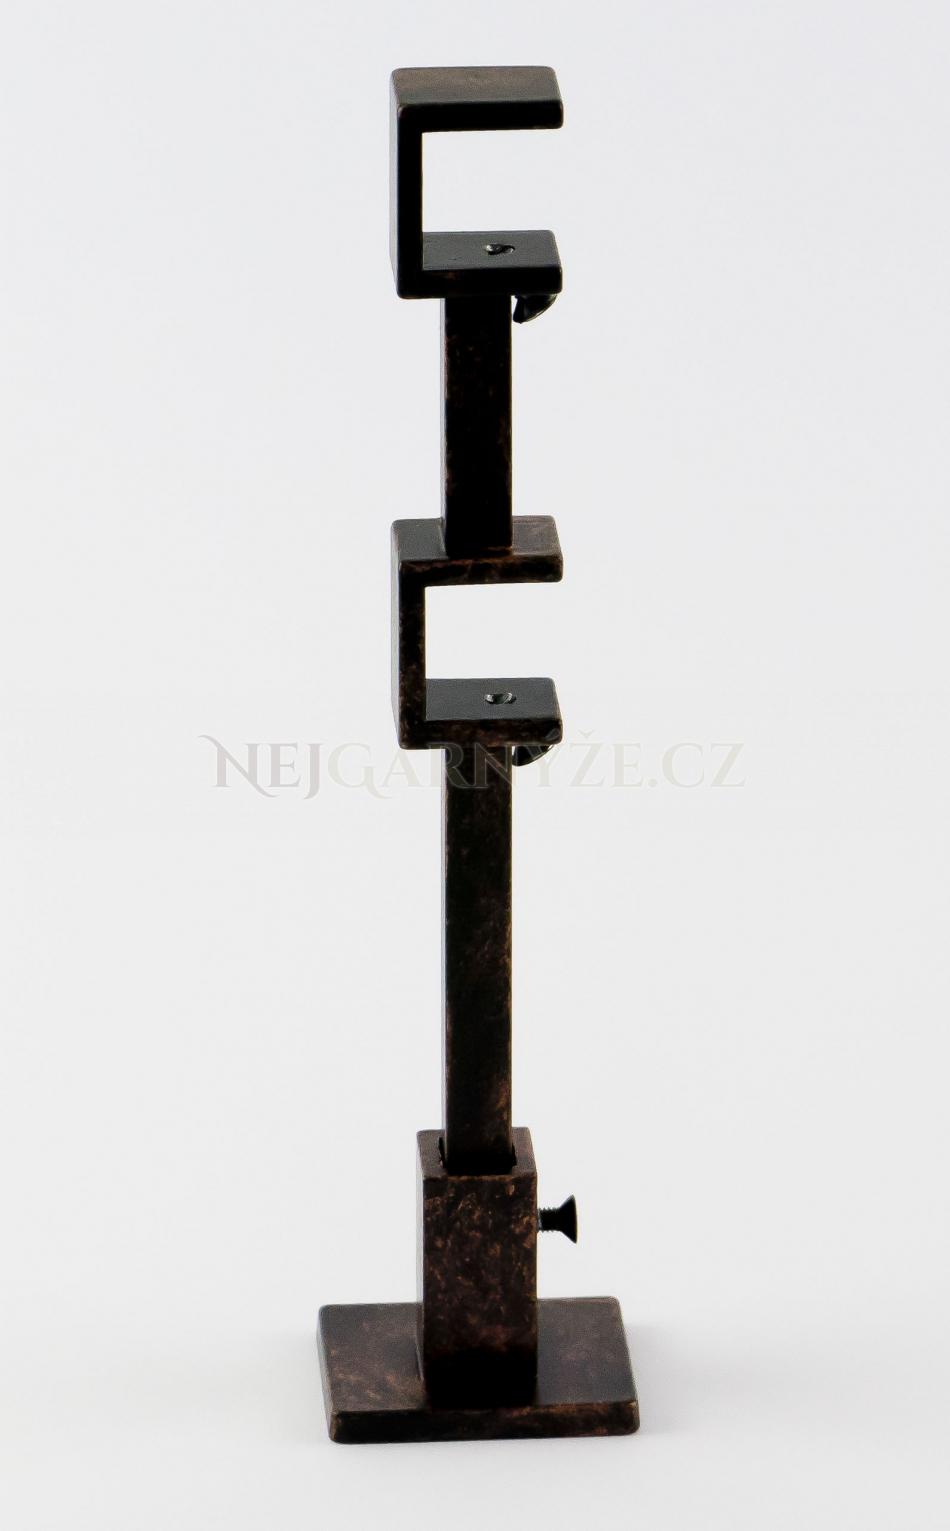 Patinovaný kovový držák Quatro dvoutyčový Černo-mědená